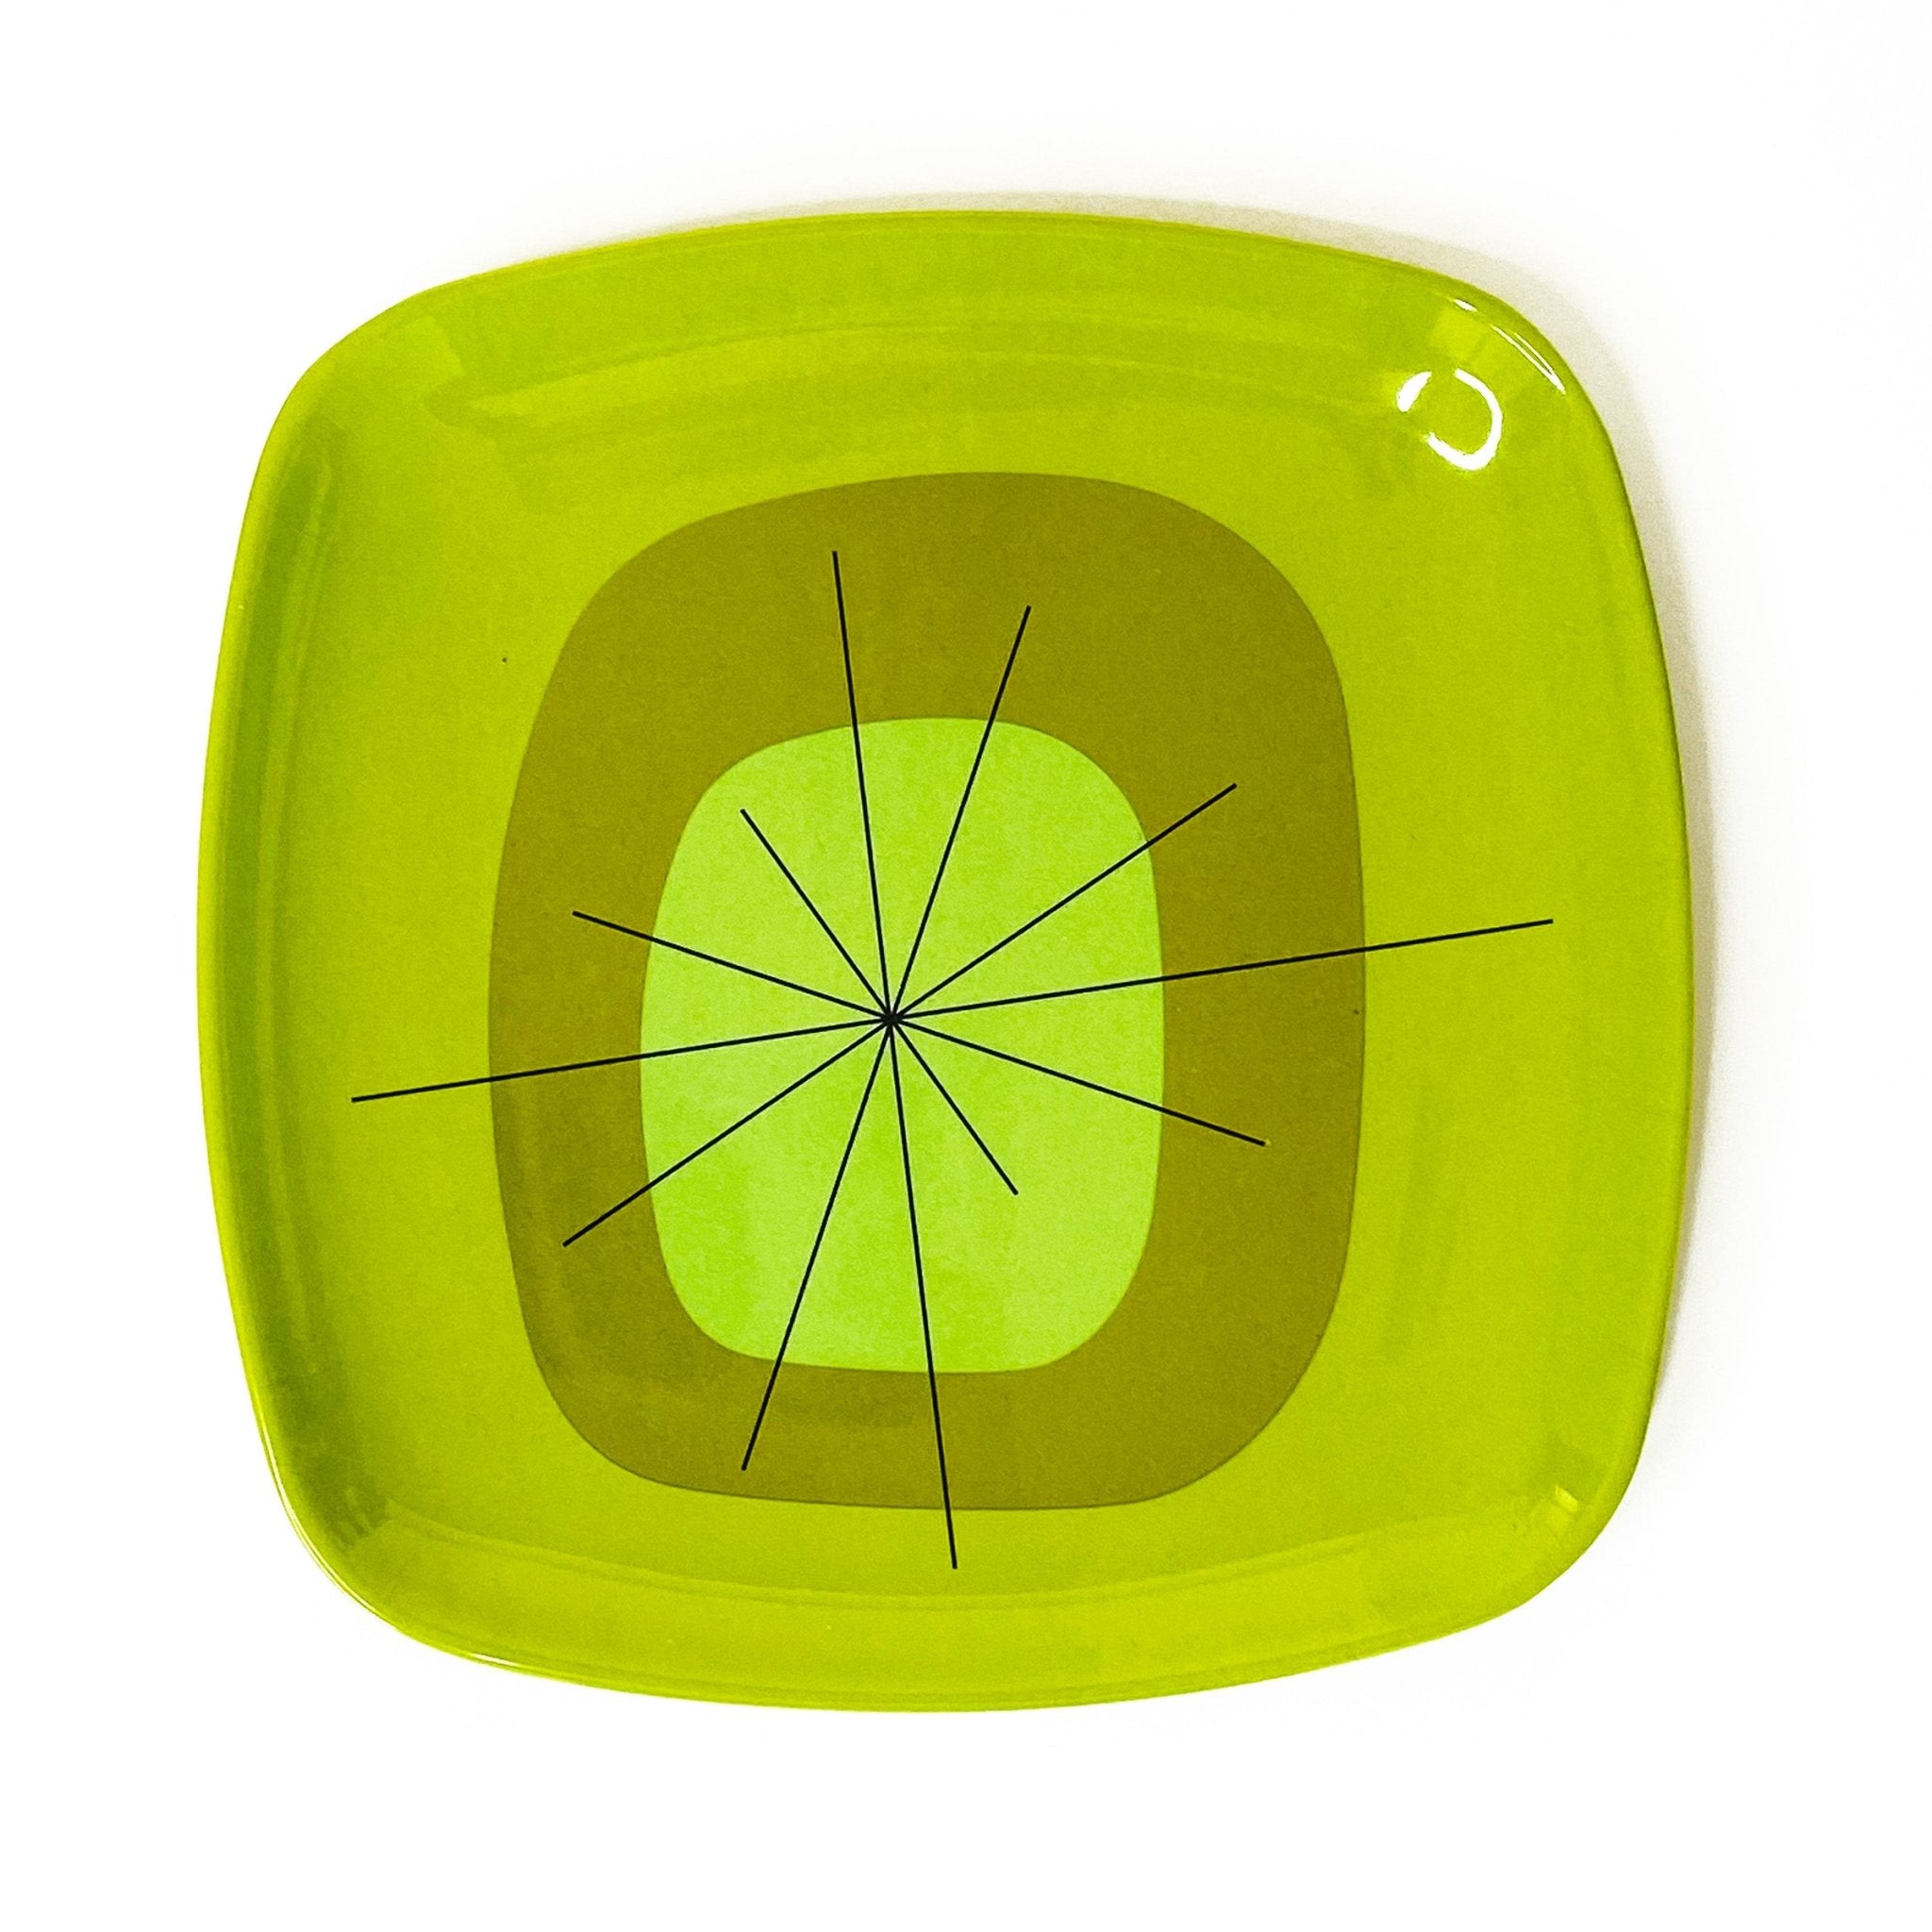 Atomic Melamine Salad Plates - Green - Set of 4 - Destination PSP